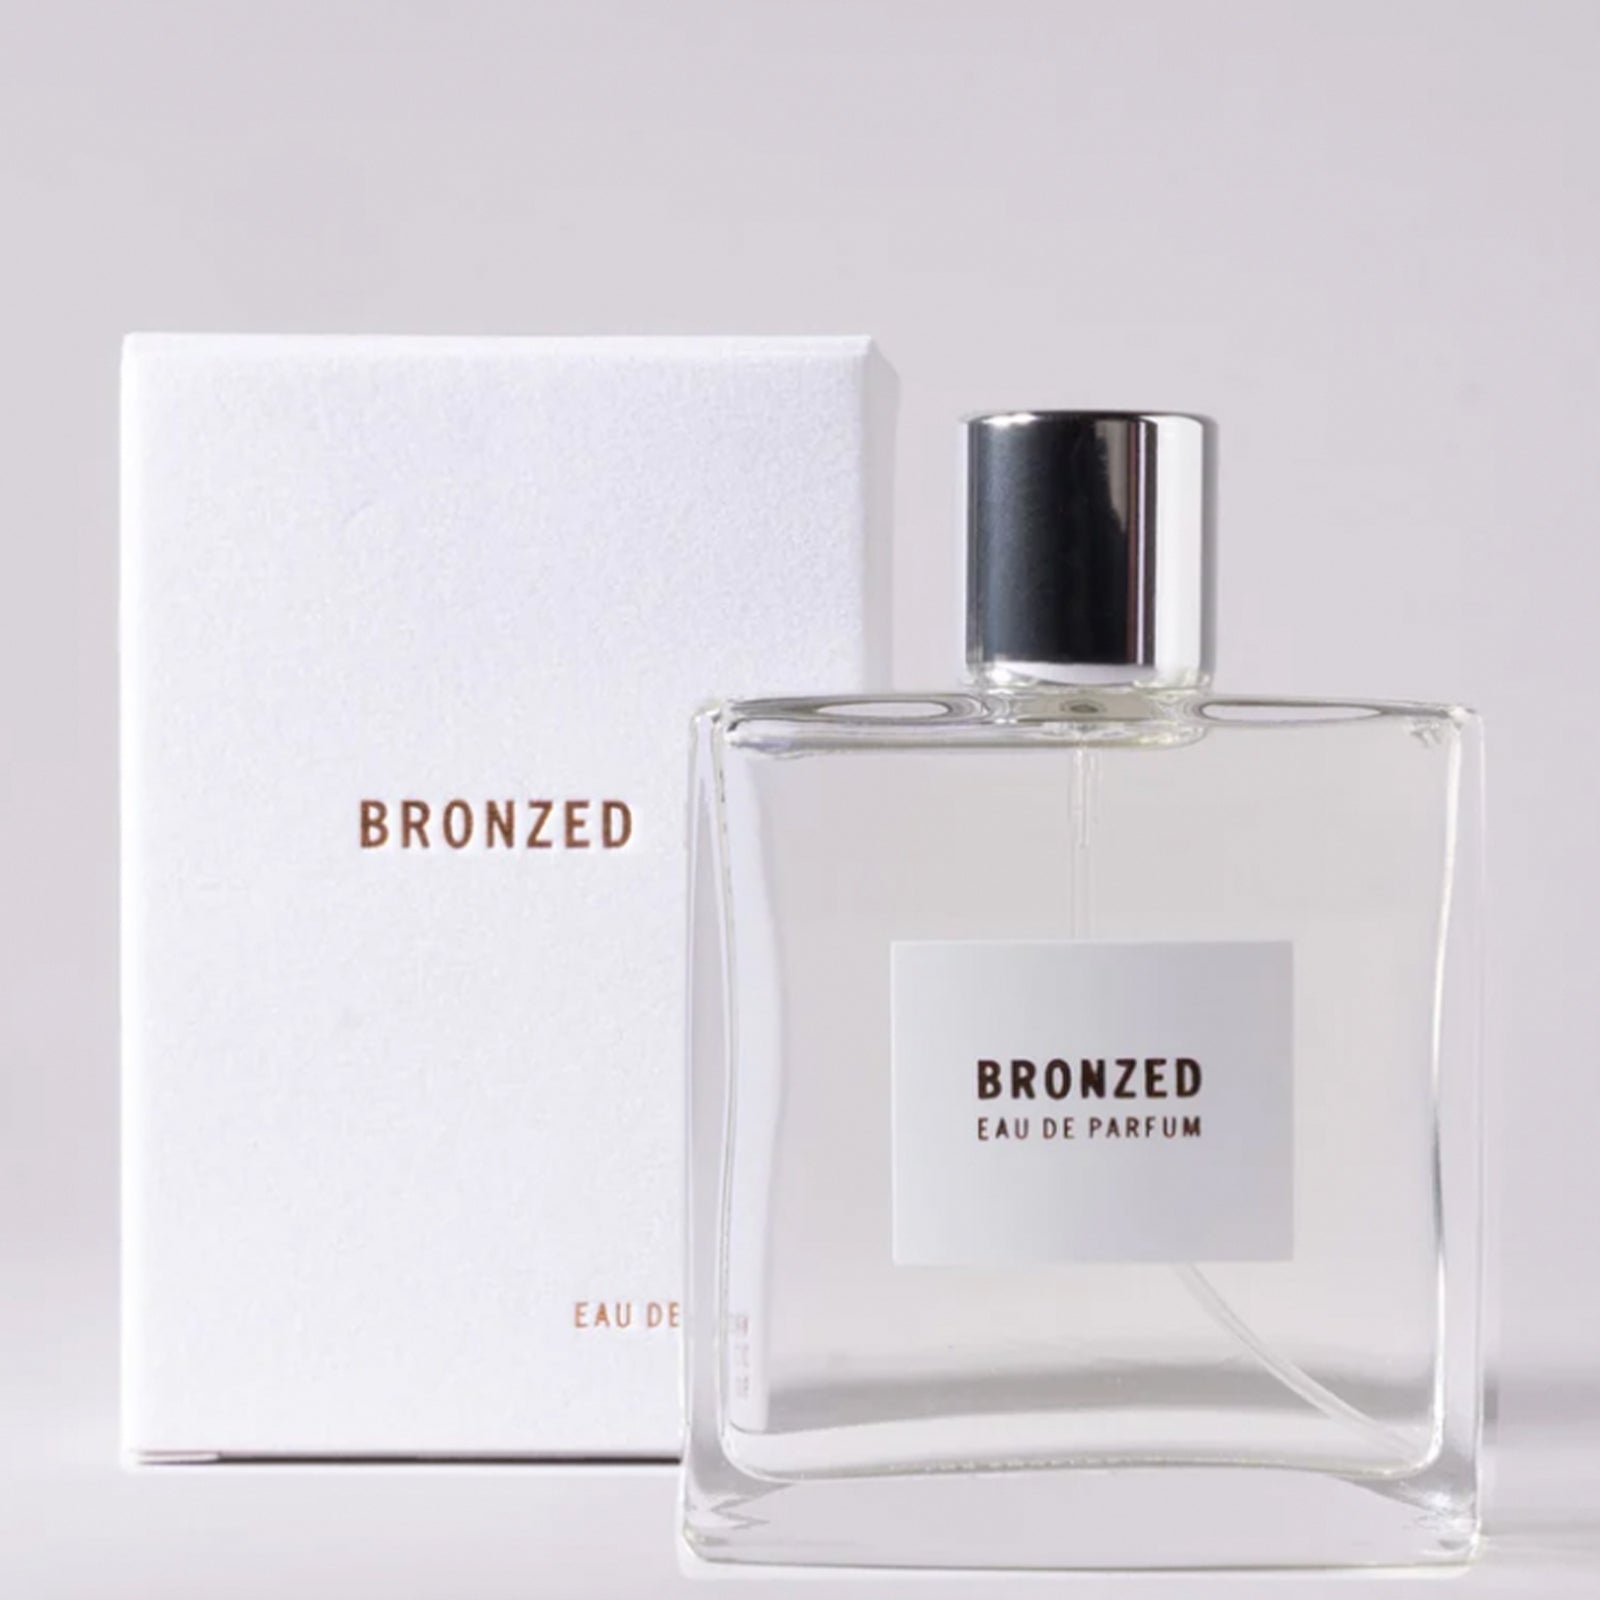 APOTHIA / BRONZED eau de parfum 50ml